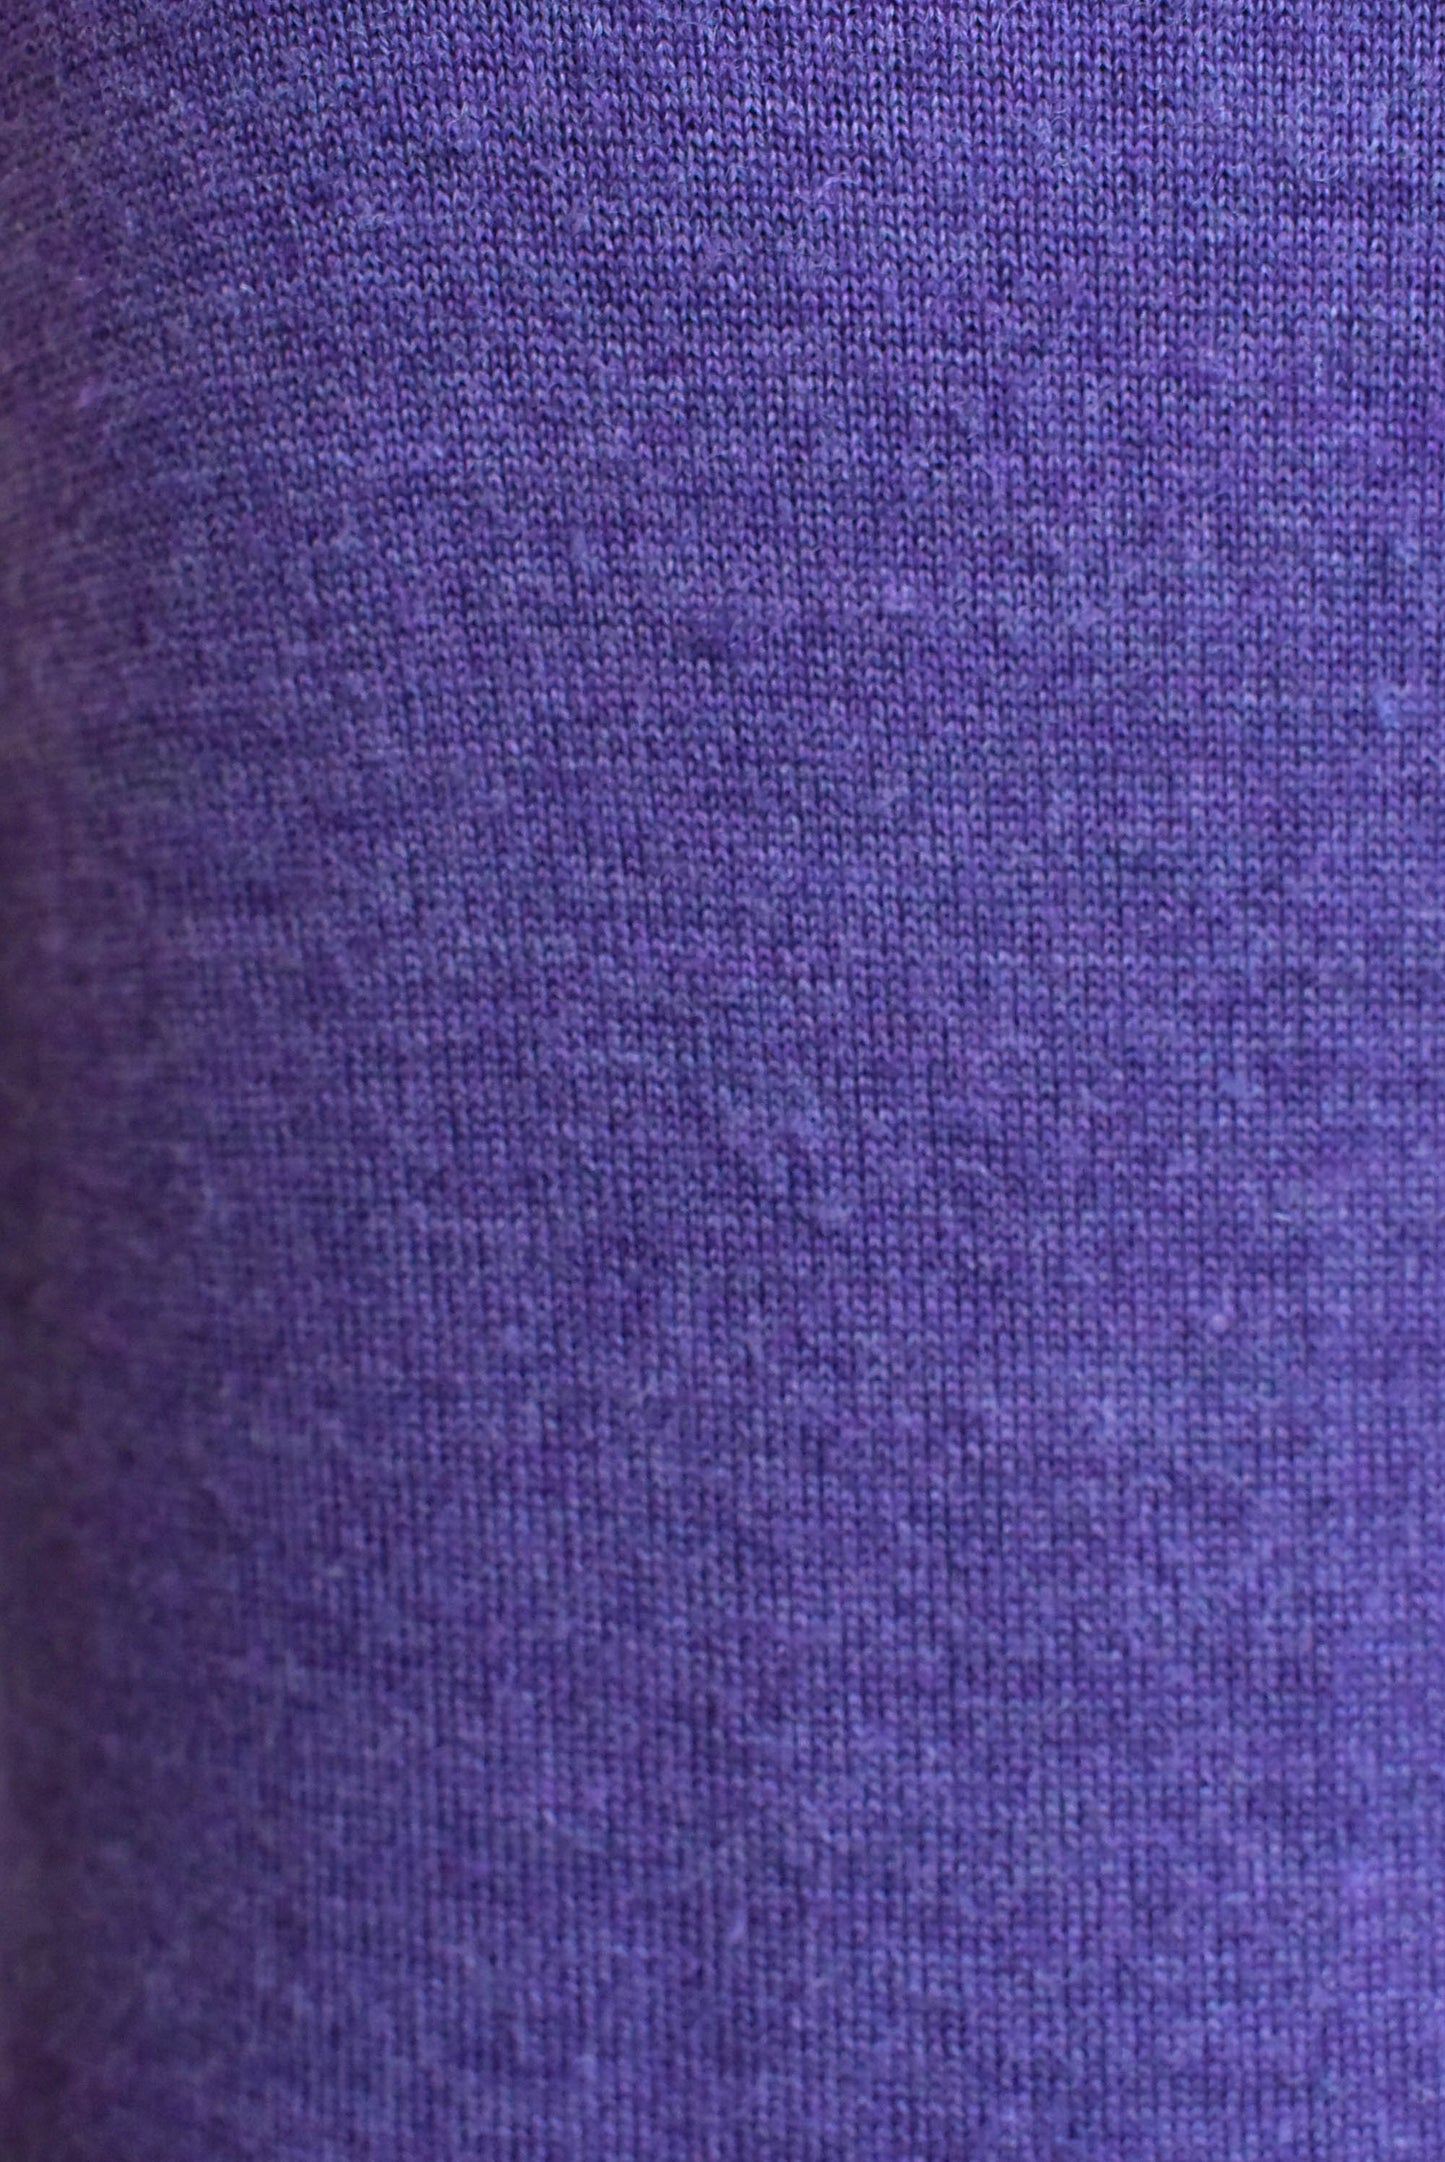 Segreto purple wool knit top, size 10